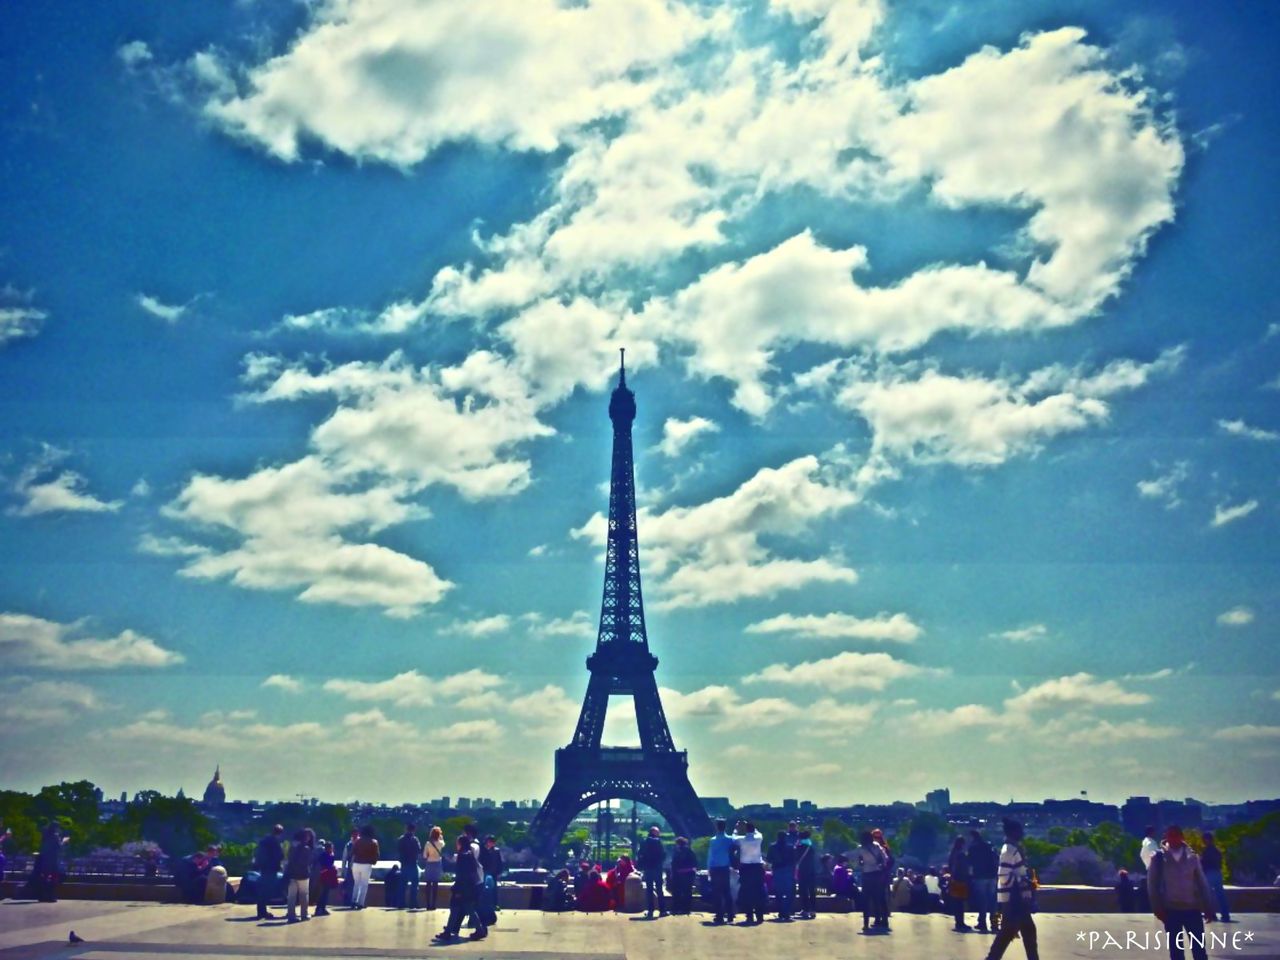 Tour Eiffel1 エッフェル塔1 Parisienne